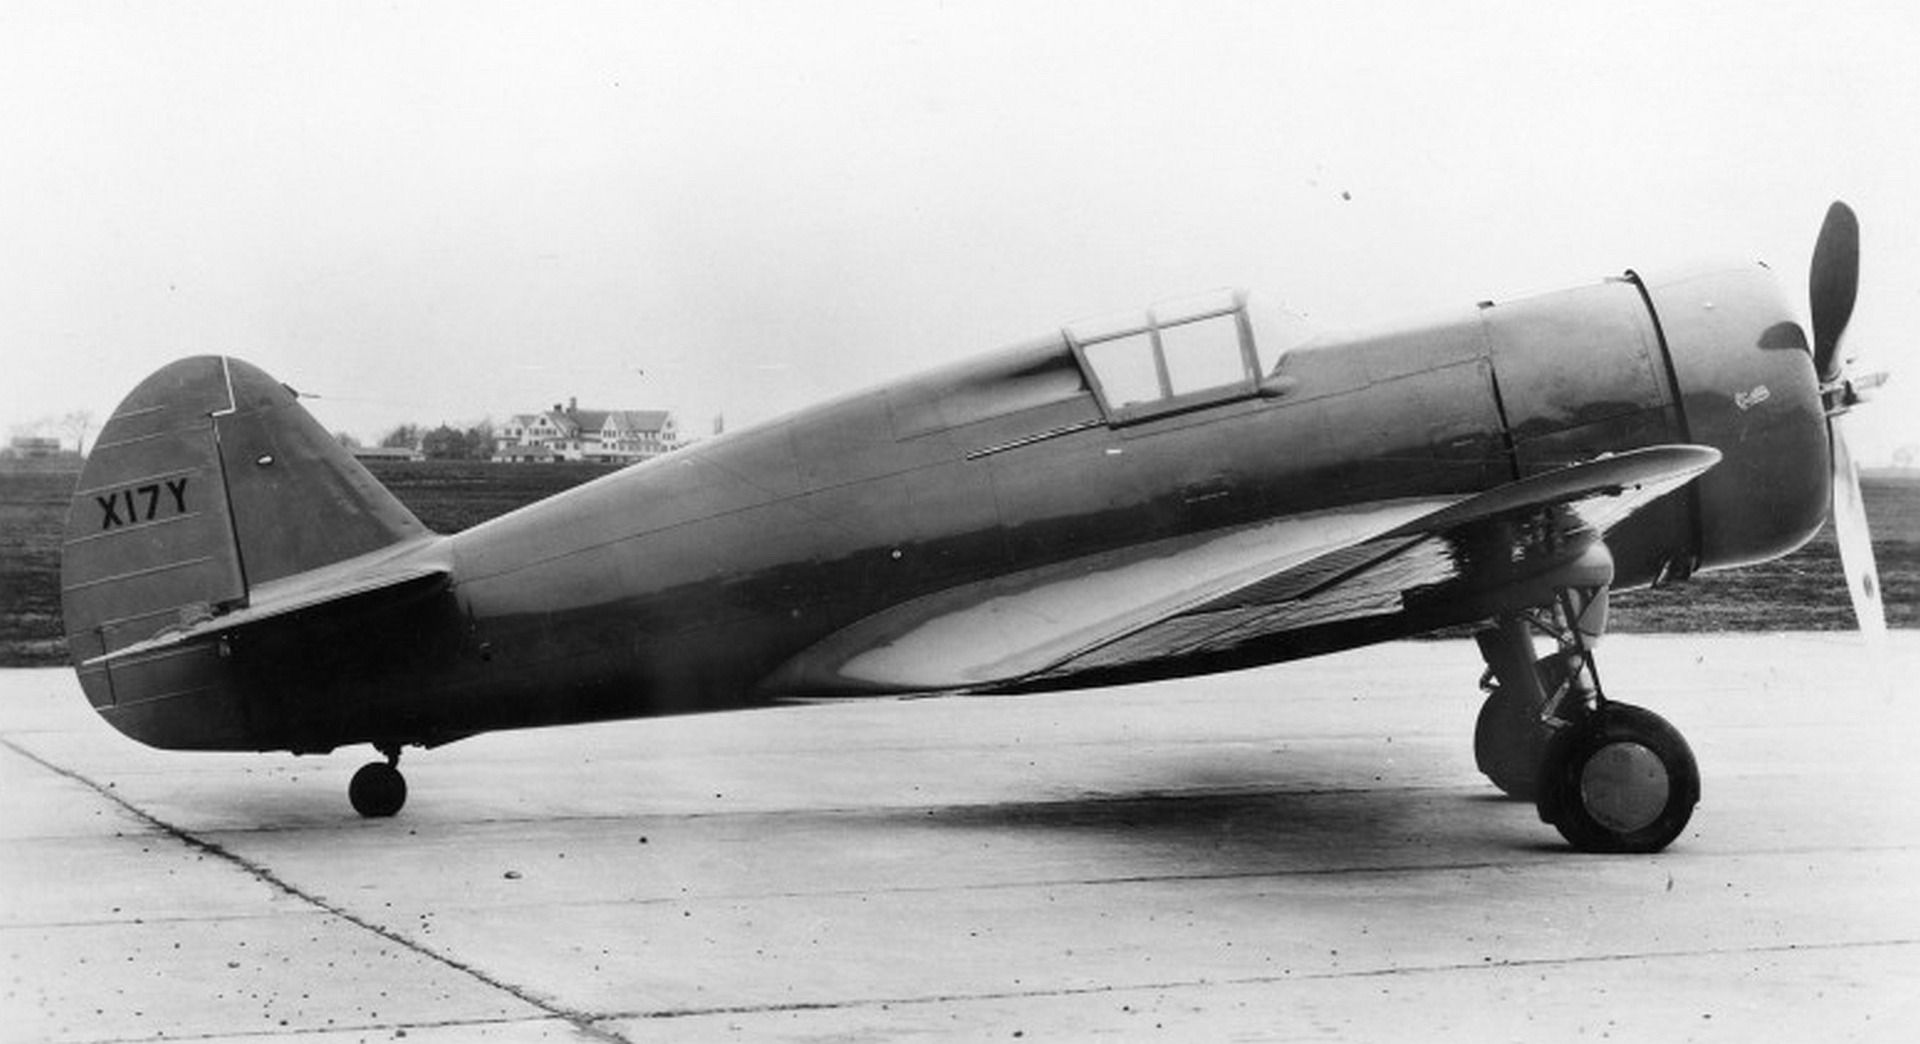 Curtiss Hawk 75 NX17Y USAF 52623 1